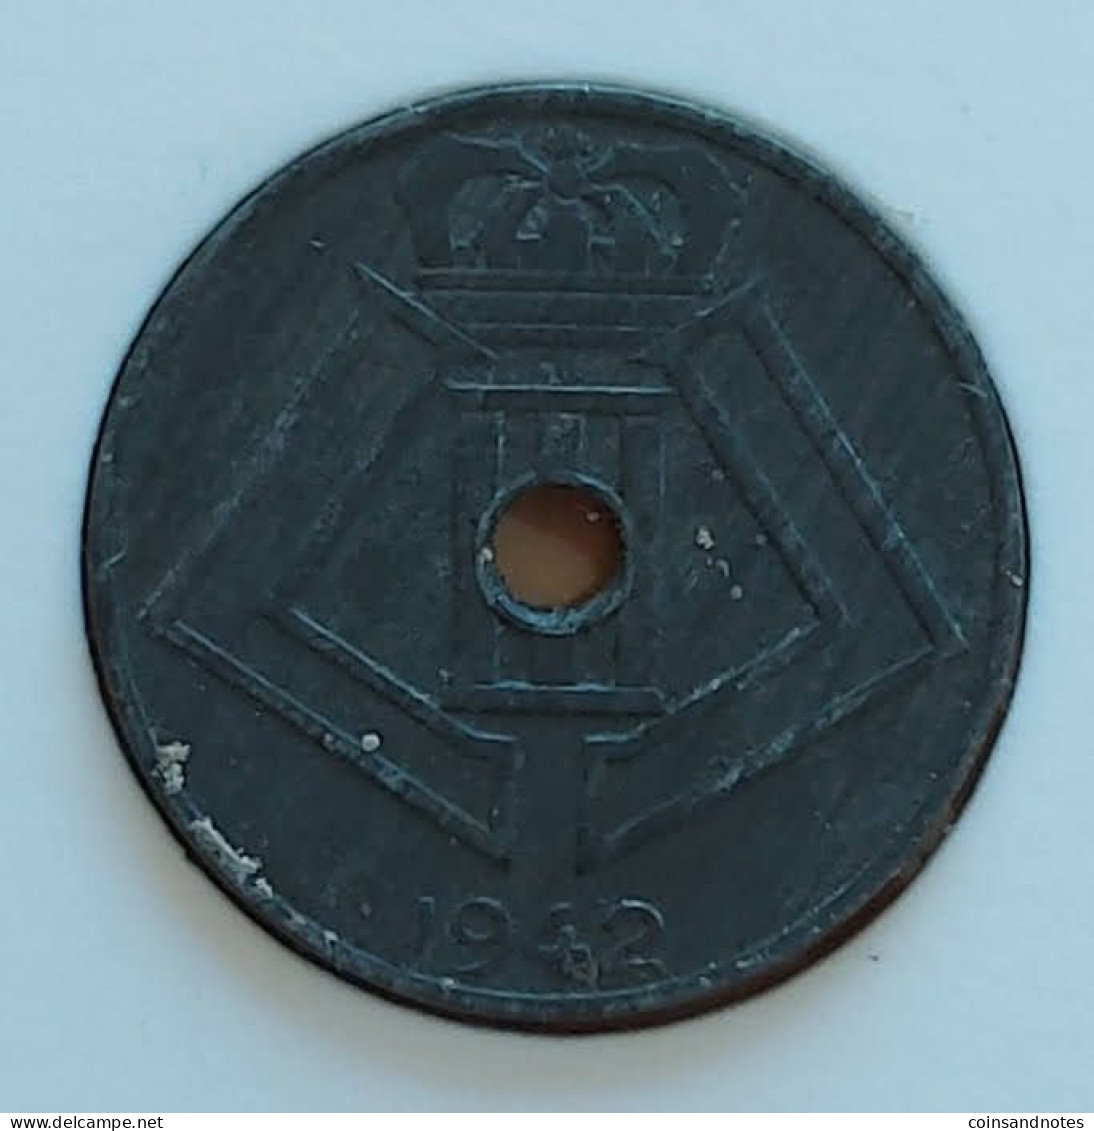 Belgium 1942 - 10 Centiem Zink/Jespers VL/FR - Leopold III - Morin 492 - UNC - 10 Cent